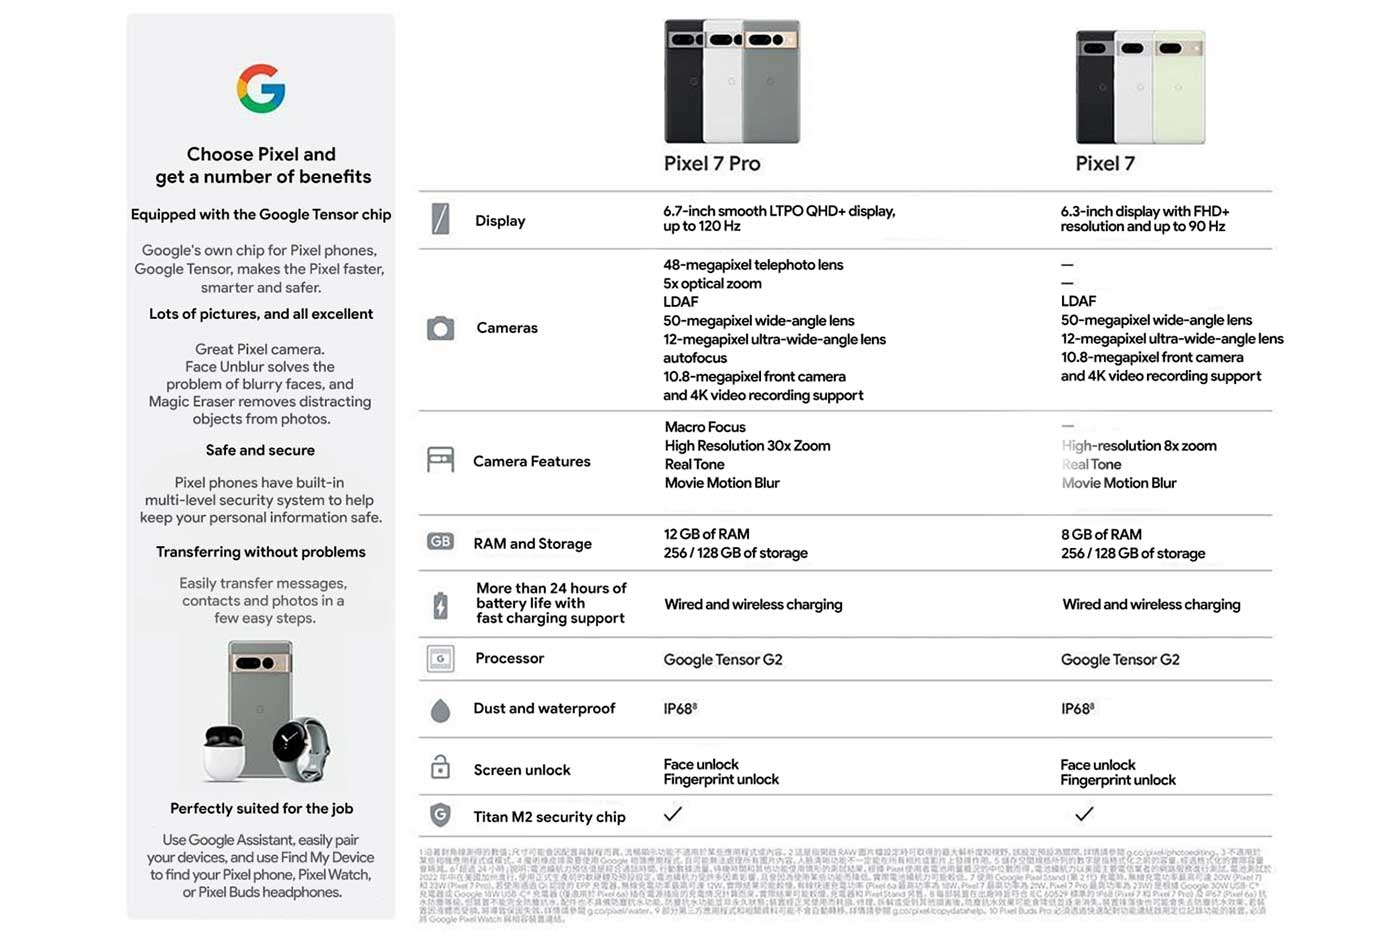 Google Pixel 7 (Pro) fiche technique